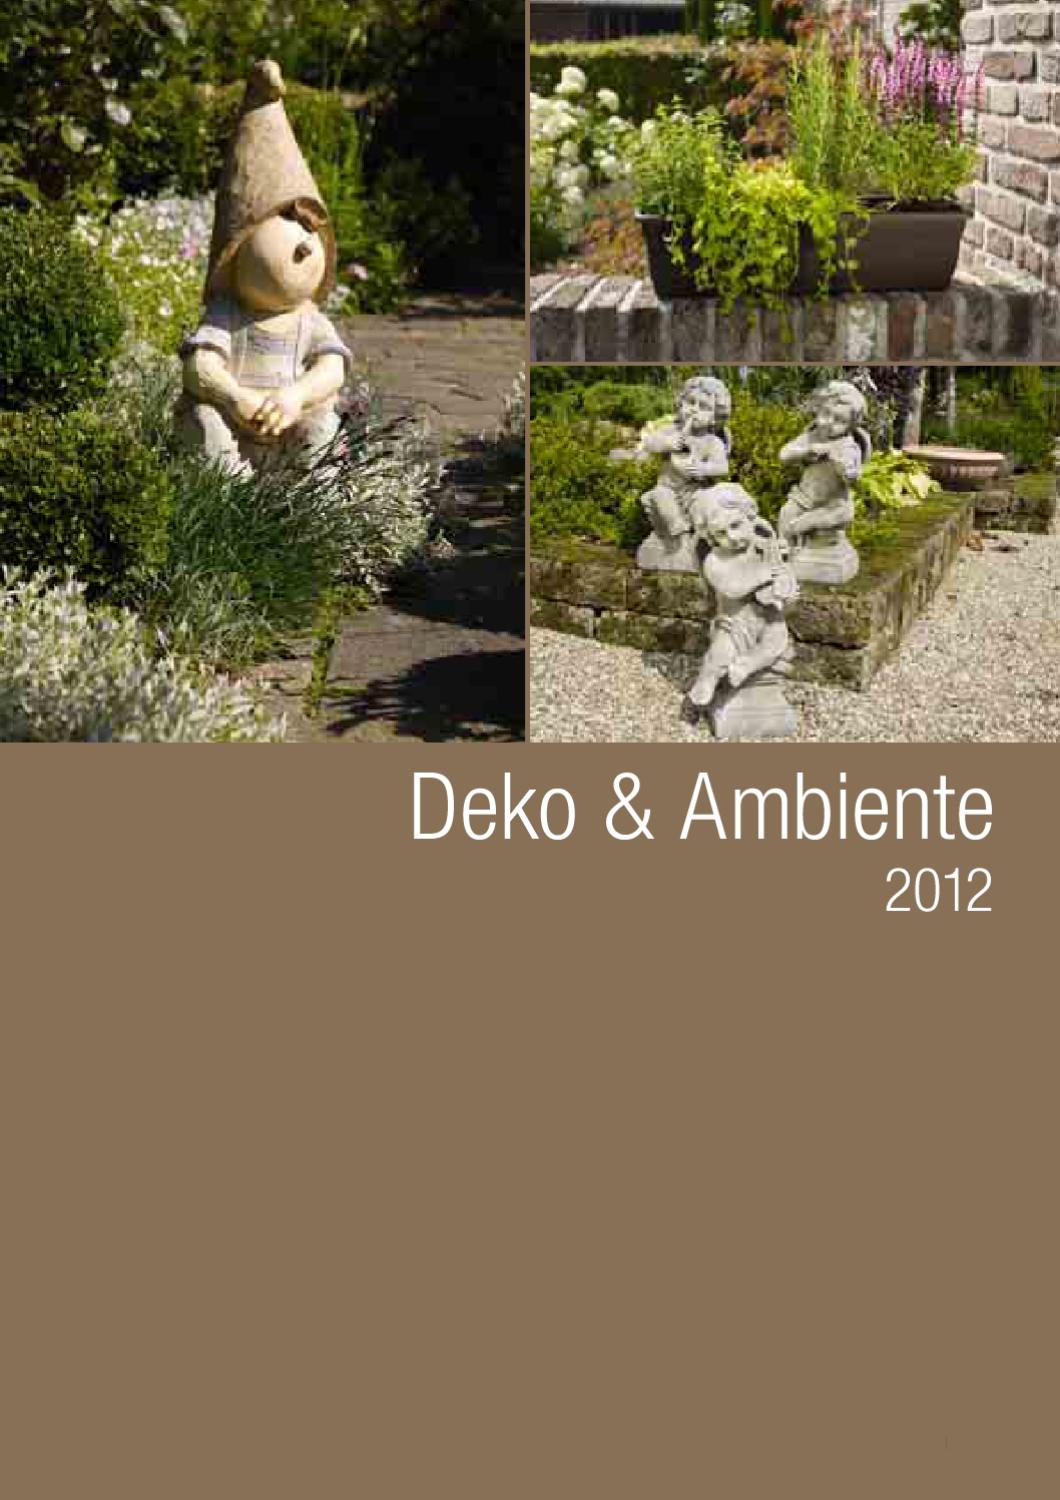 Weiden Deko Garten Neu Deko & Ambiente by Mats andersson issuu